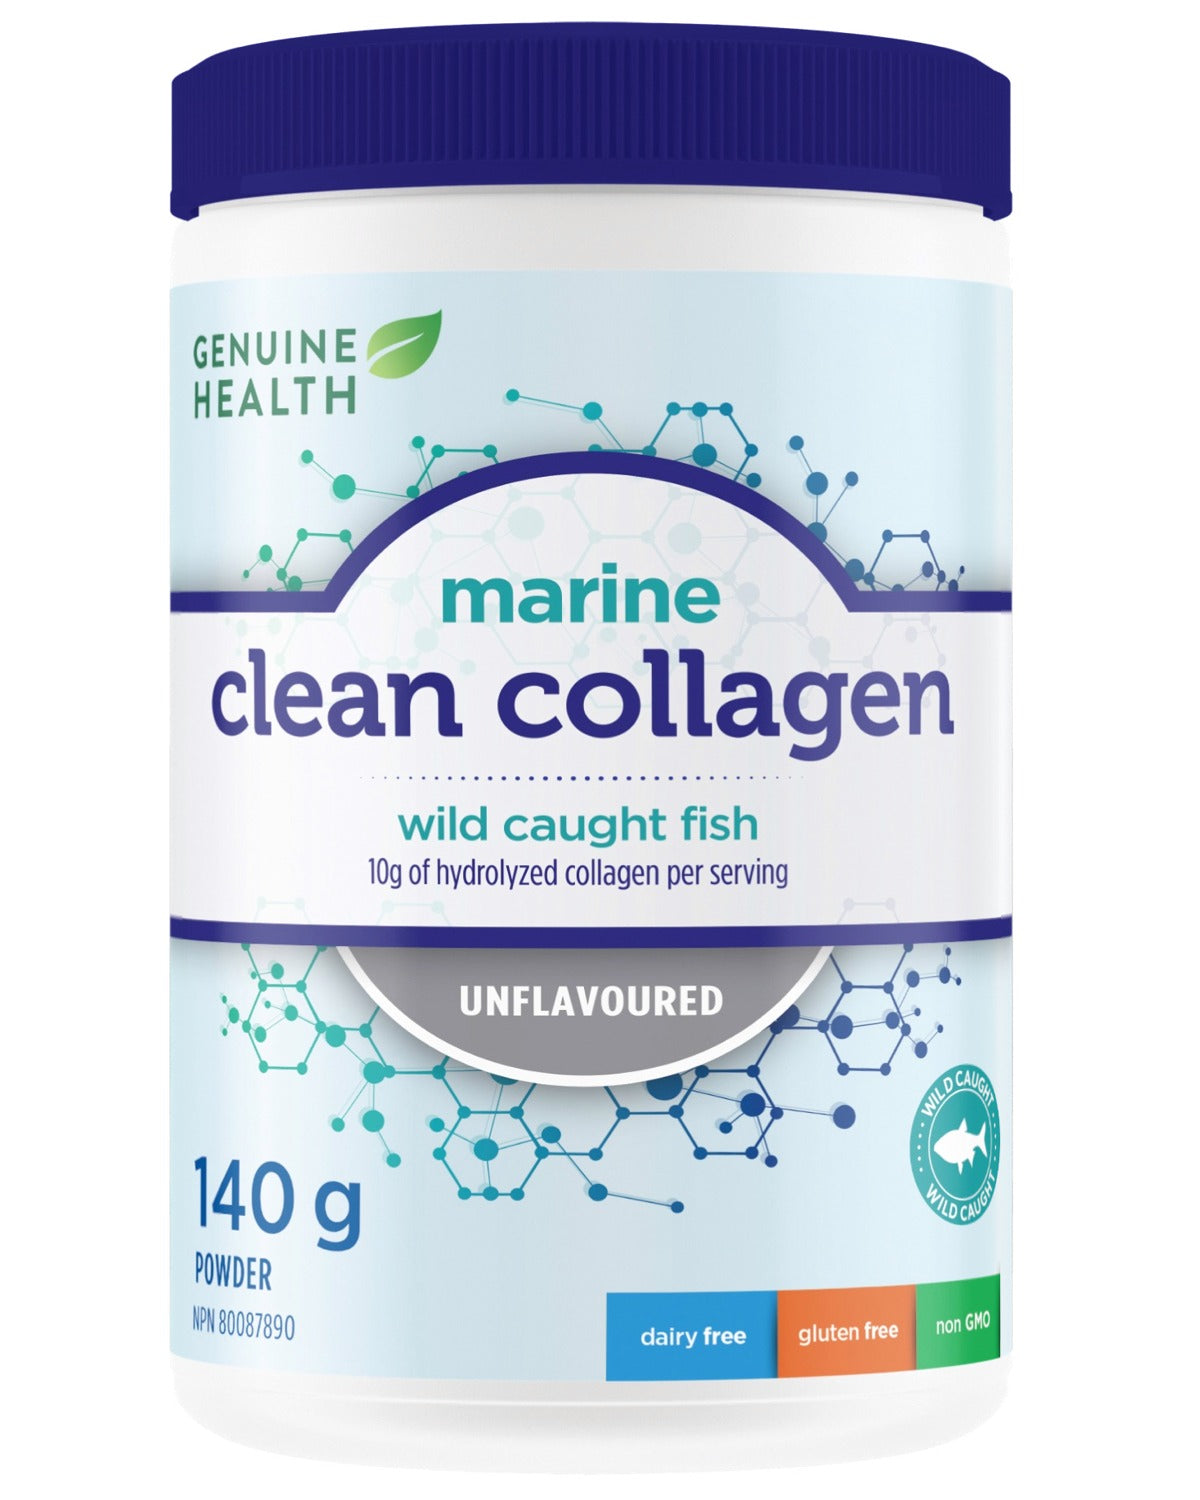 GENUINE HEALTH Clean Collagen Marine (Unflavoured 140g)